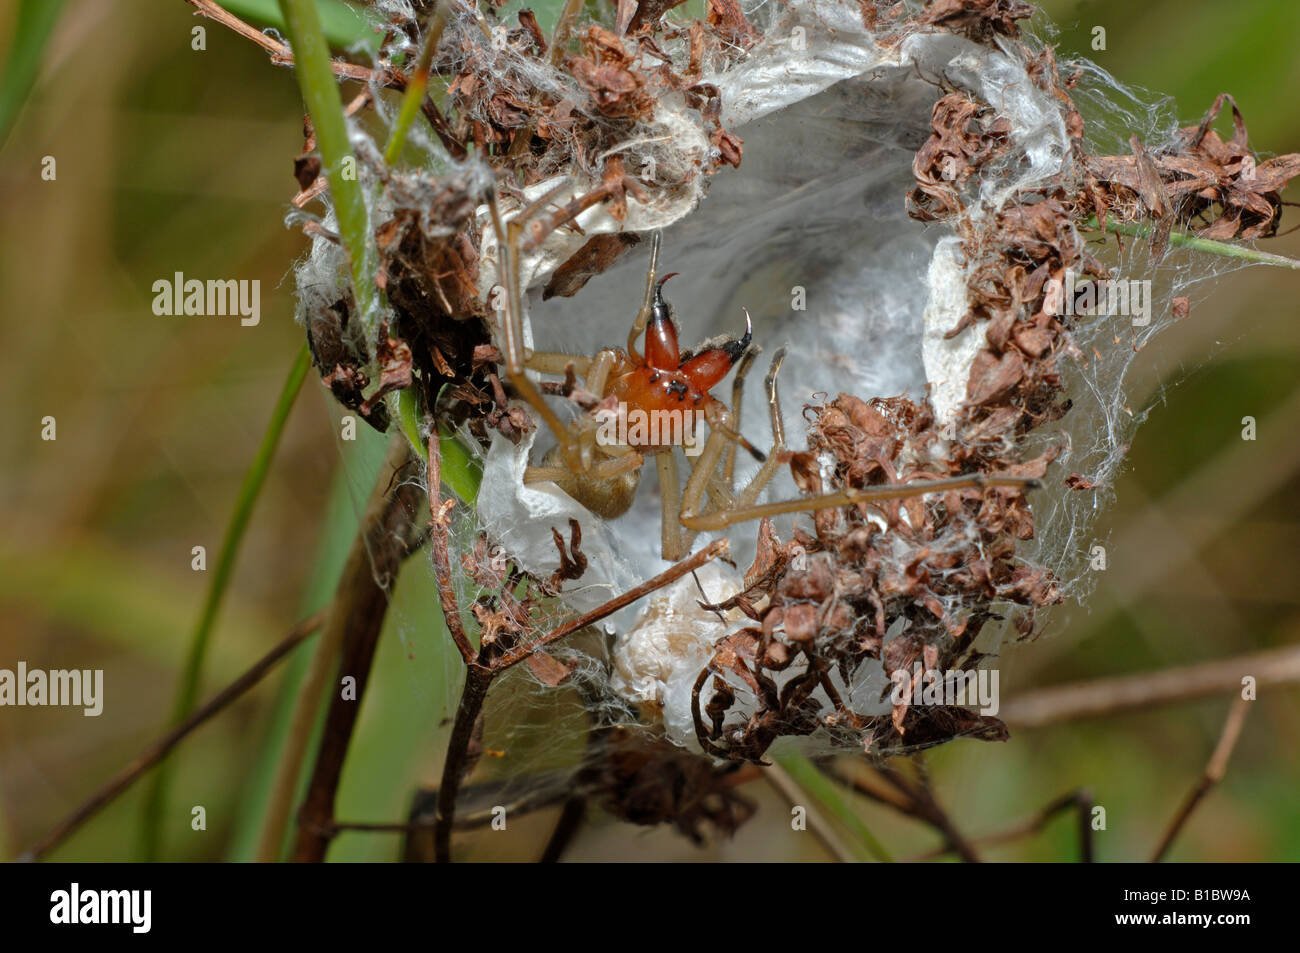 Sac jaune Cheiracanthium punctorium (araignée). Dans eggsack menaçant femelle Banque D'Images